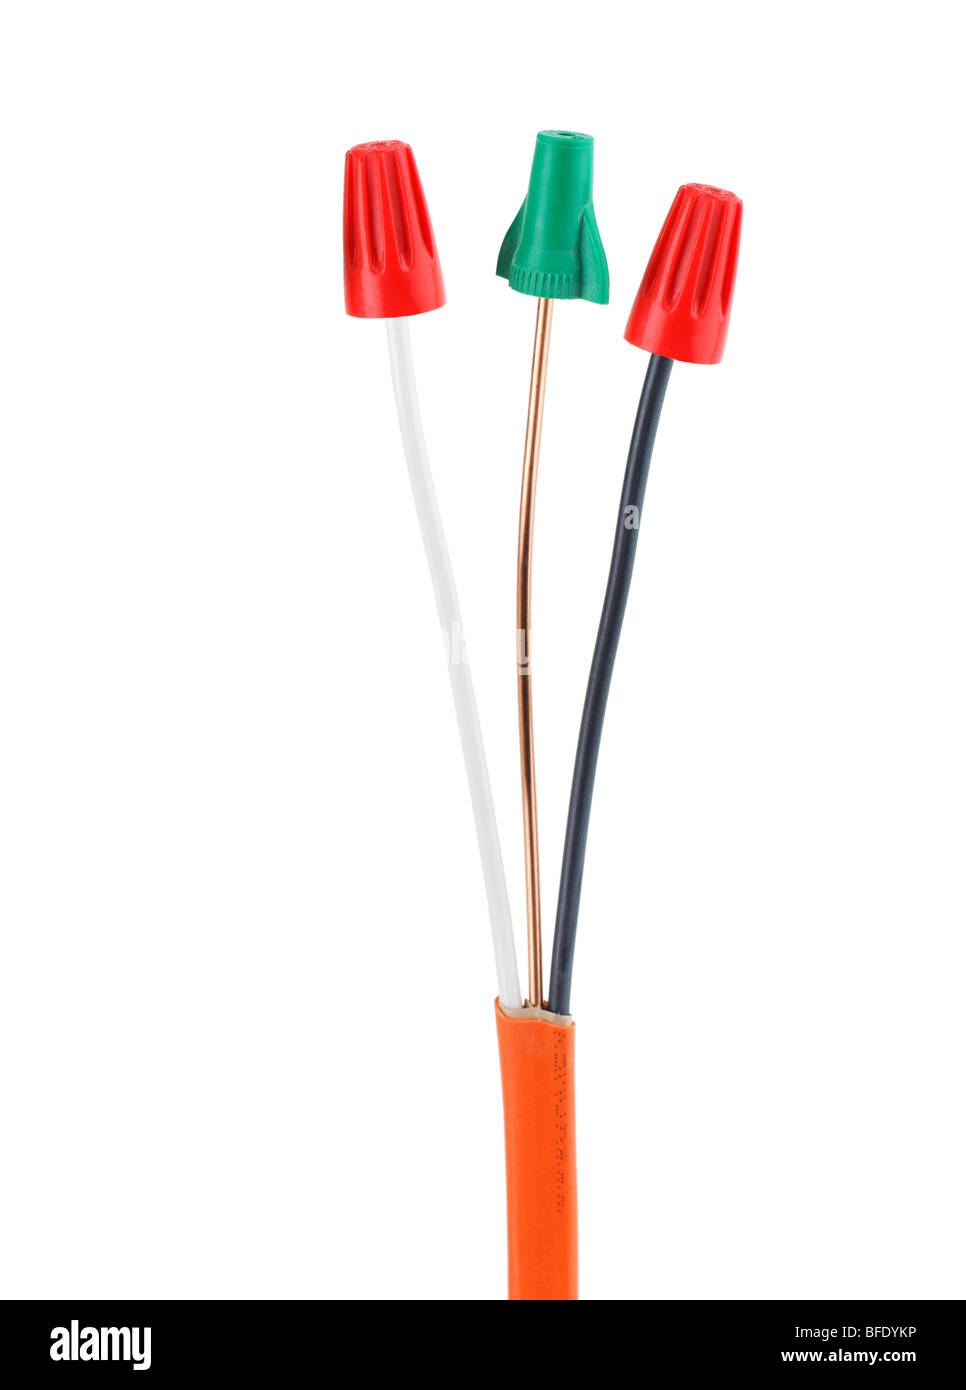 Cables eléctricos de alimentación con núcleo de cobre. alambres de cable  eléctrico, conjunto de ilustración de vector de equipo de electricidad  flexible. cable eléctrico de hardware